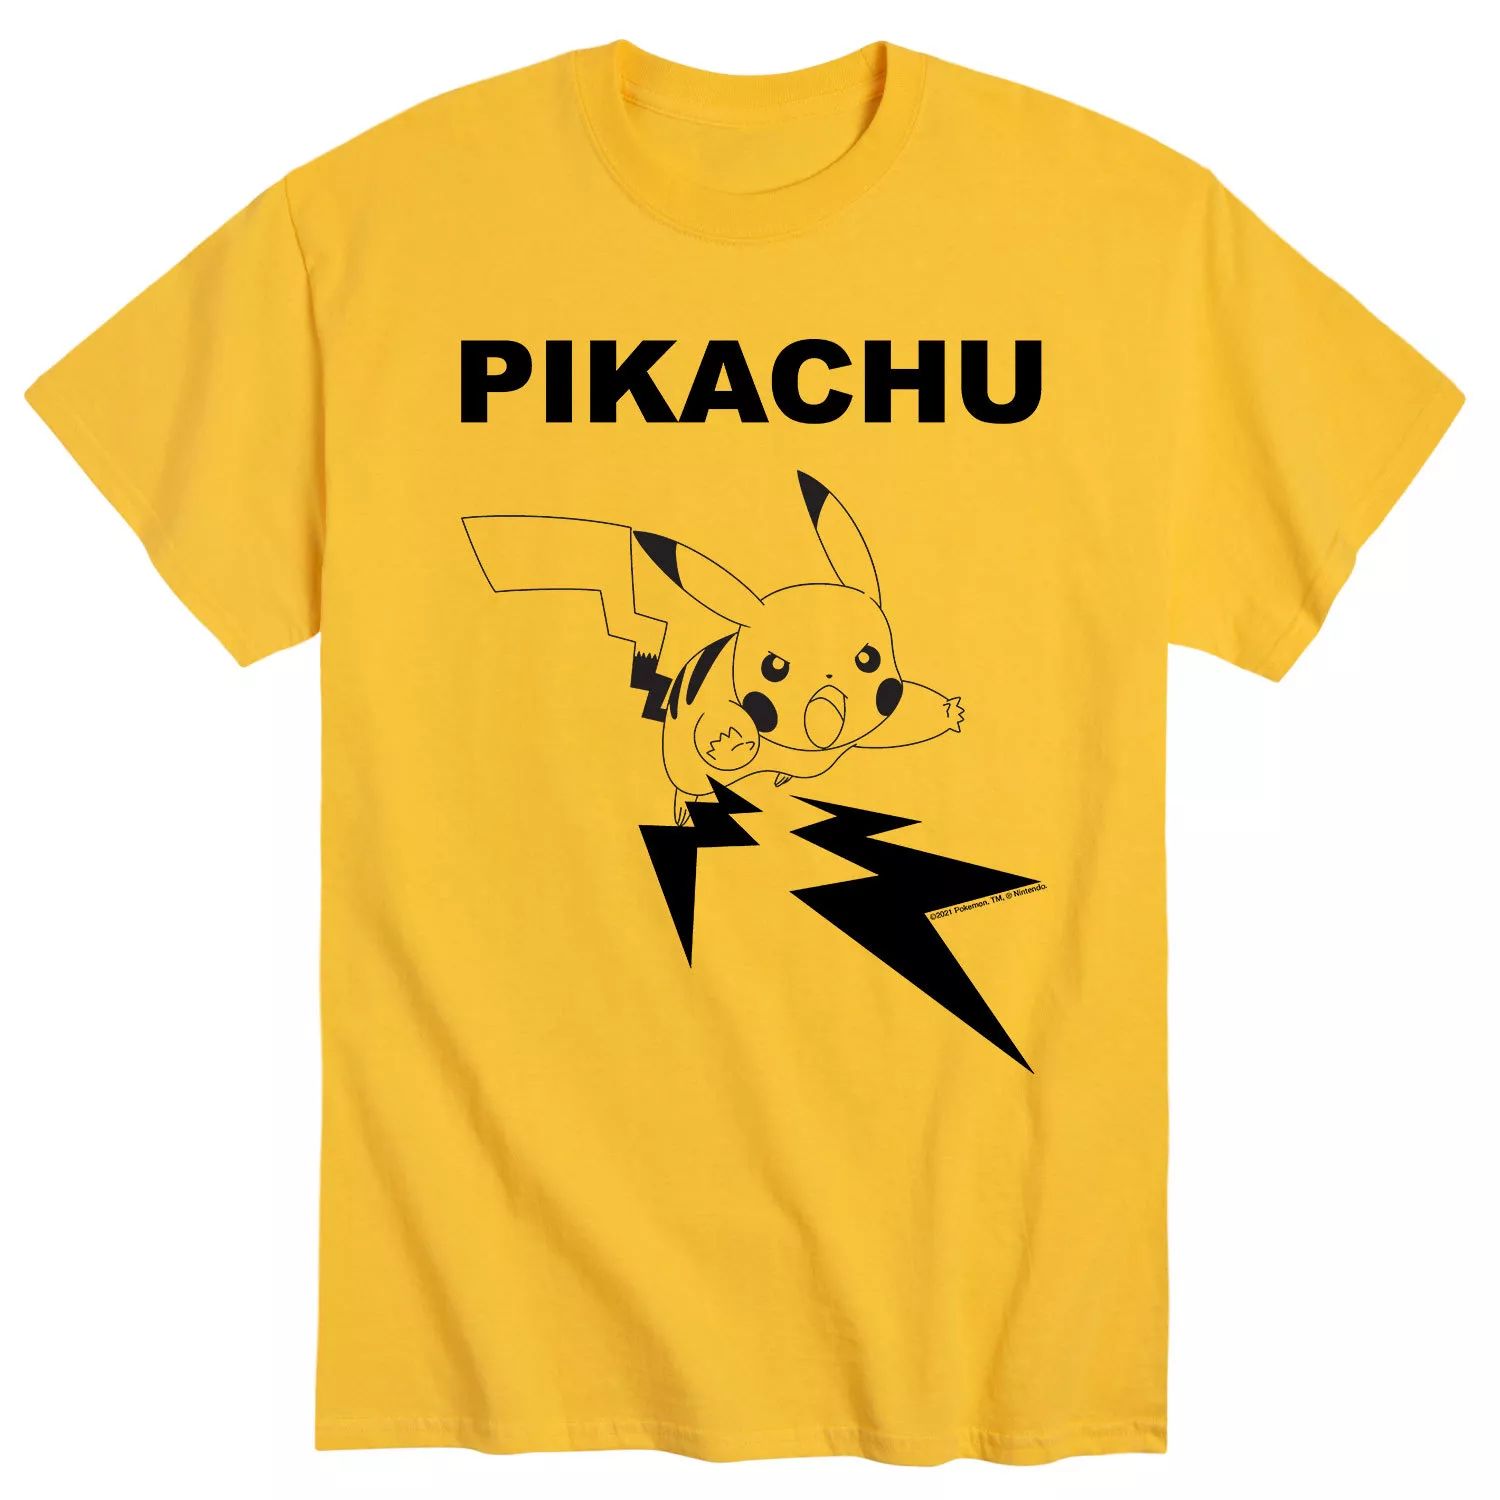 Мужская футболка с покемоном Пикачу для помолвки Licensed Character пазлы детские с покемоном пикачу 300 500 1000 шт